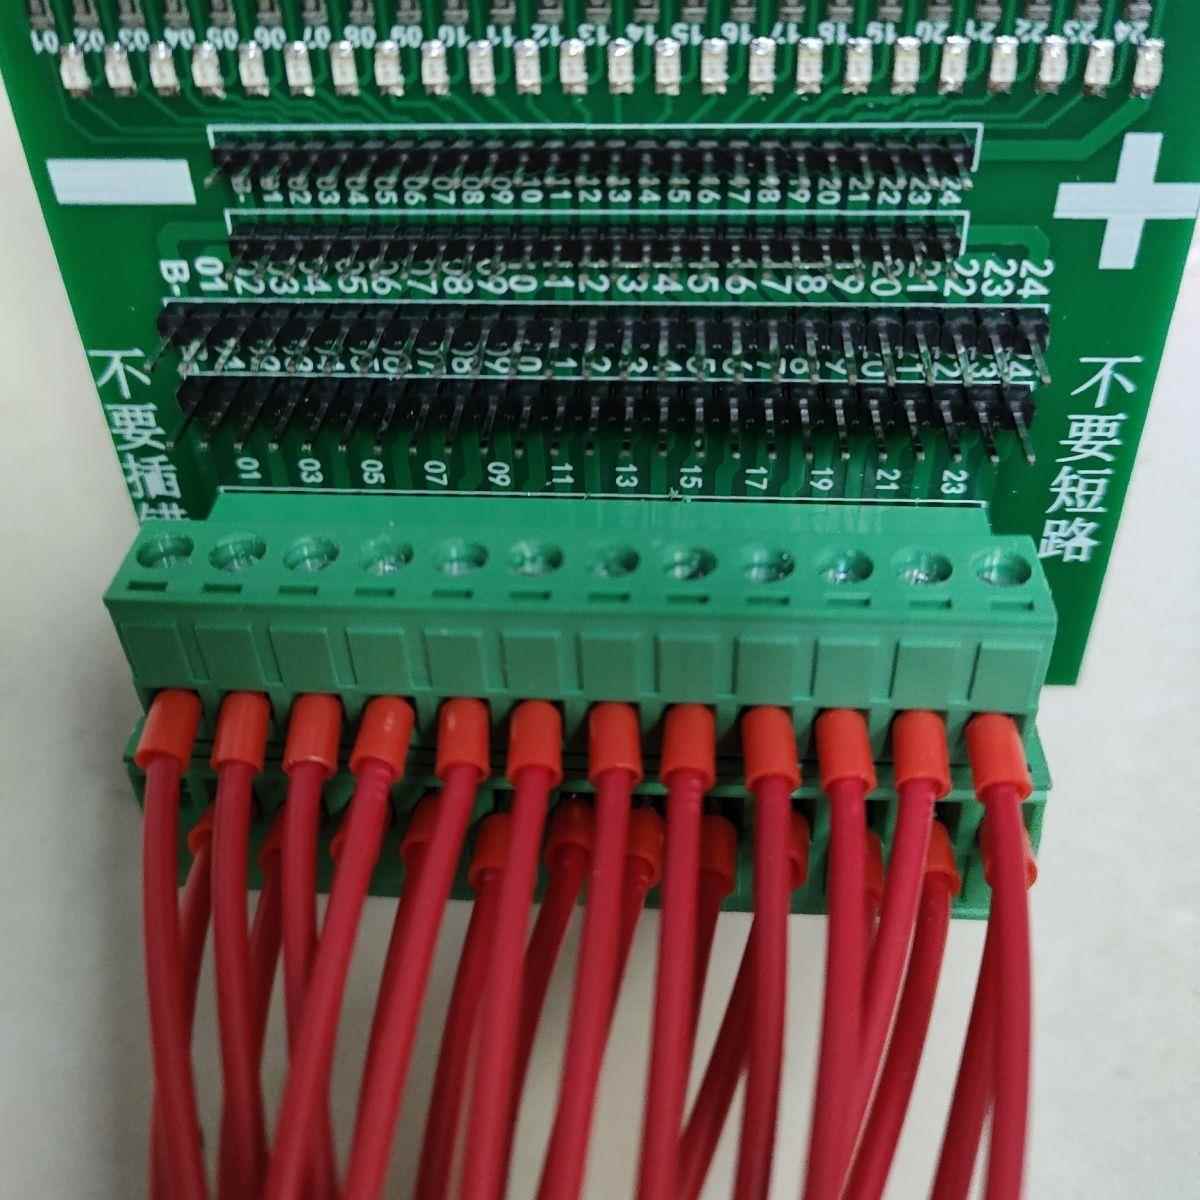 锂电池转接板电池组保护板排线LED检测板测试排线线序断线检测线